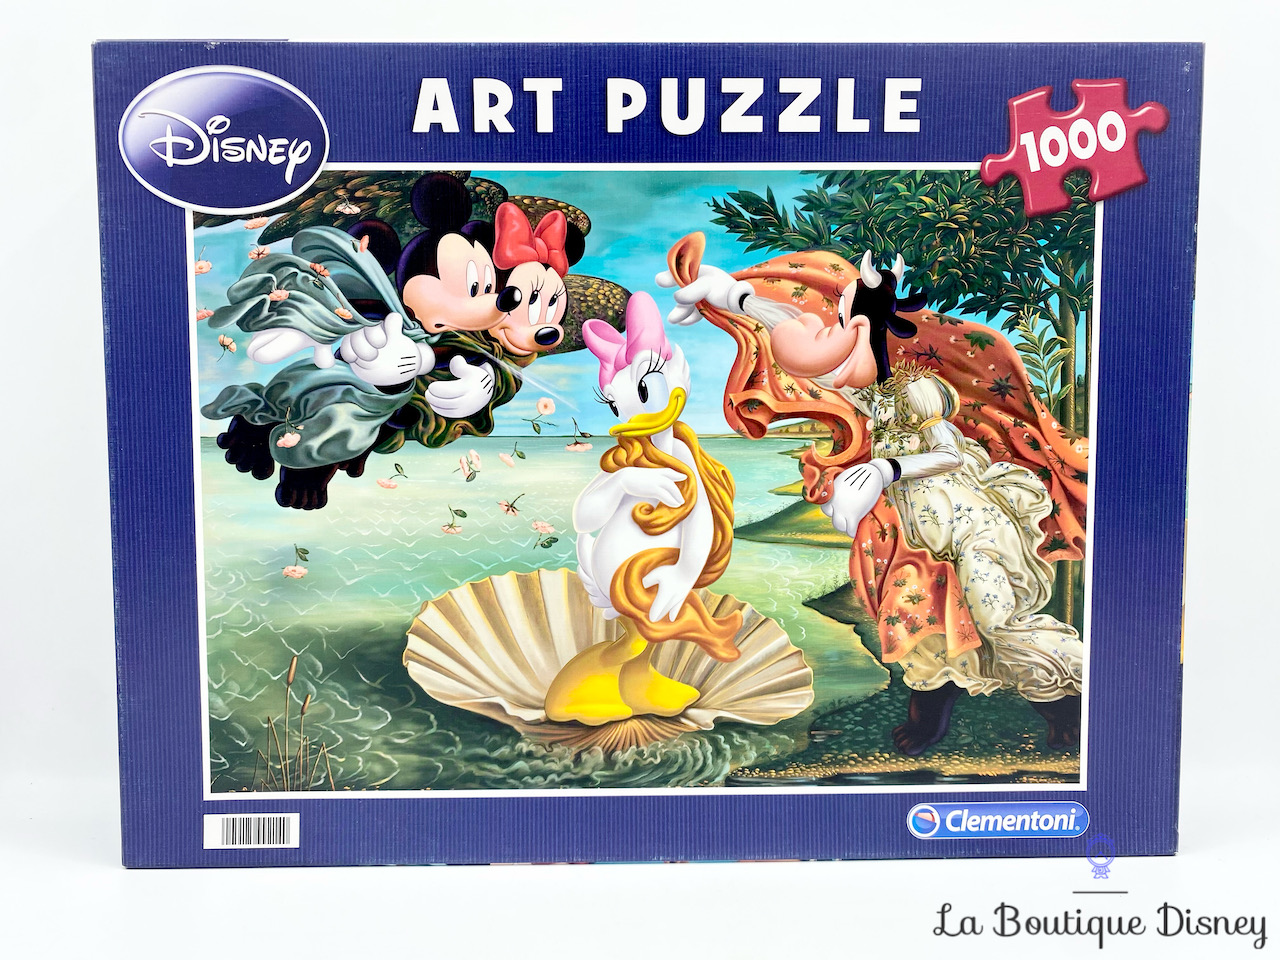 puzzle-1000-pieces-art-puzzle-naissance-daisy-disney-clementoni-naissance-de-venus-coquillage-3